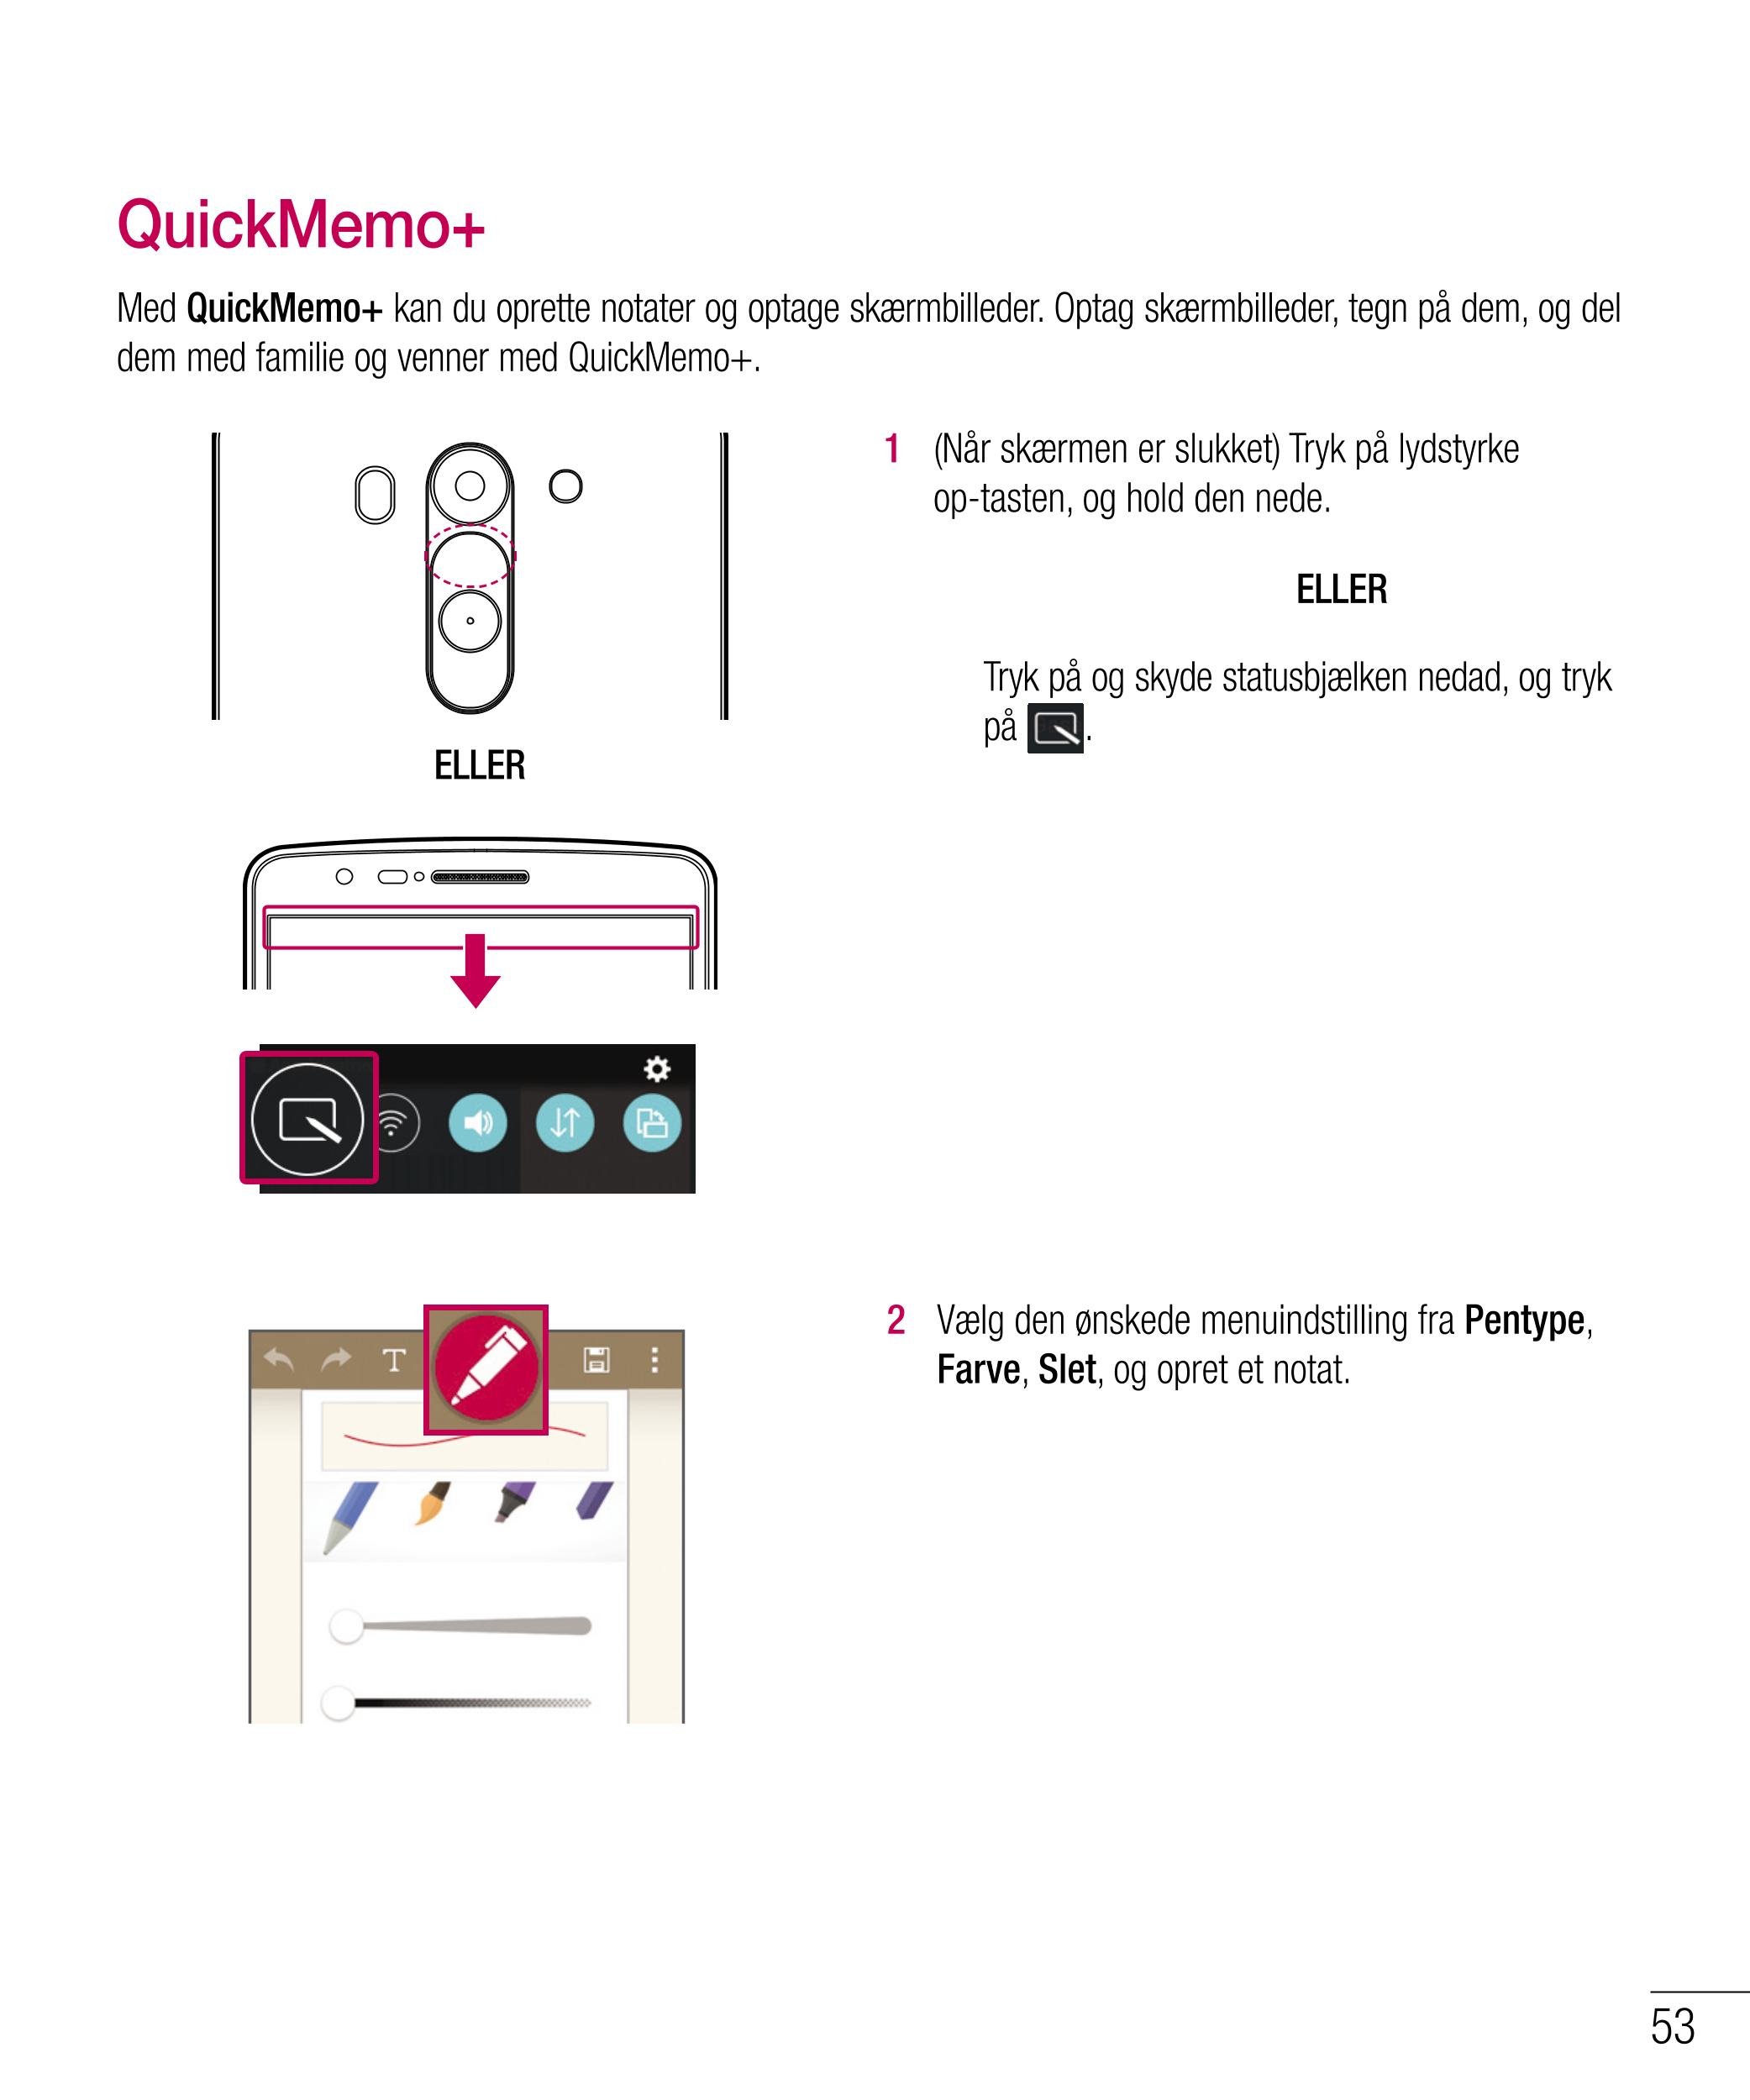 QuickMemo+
Med  QuickMemo+ kan du oprette notater og optage skærmbilleder. Optag skærmbilleder, tegn på dem, og del 
dem med fam